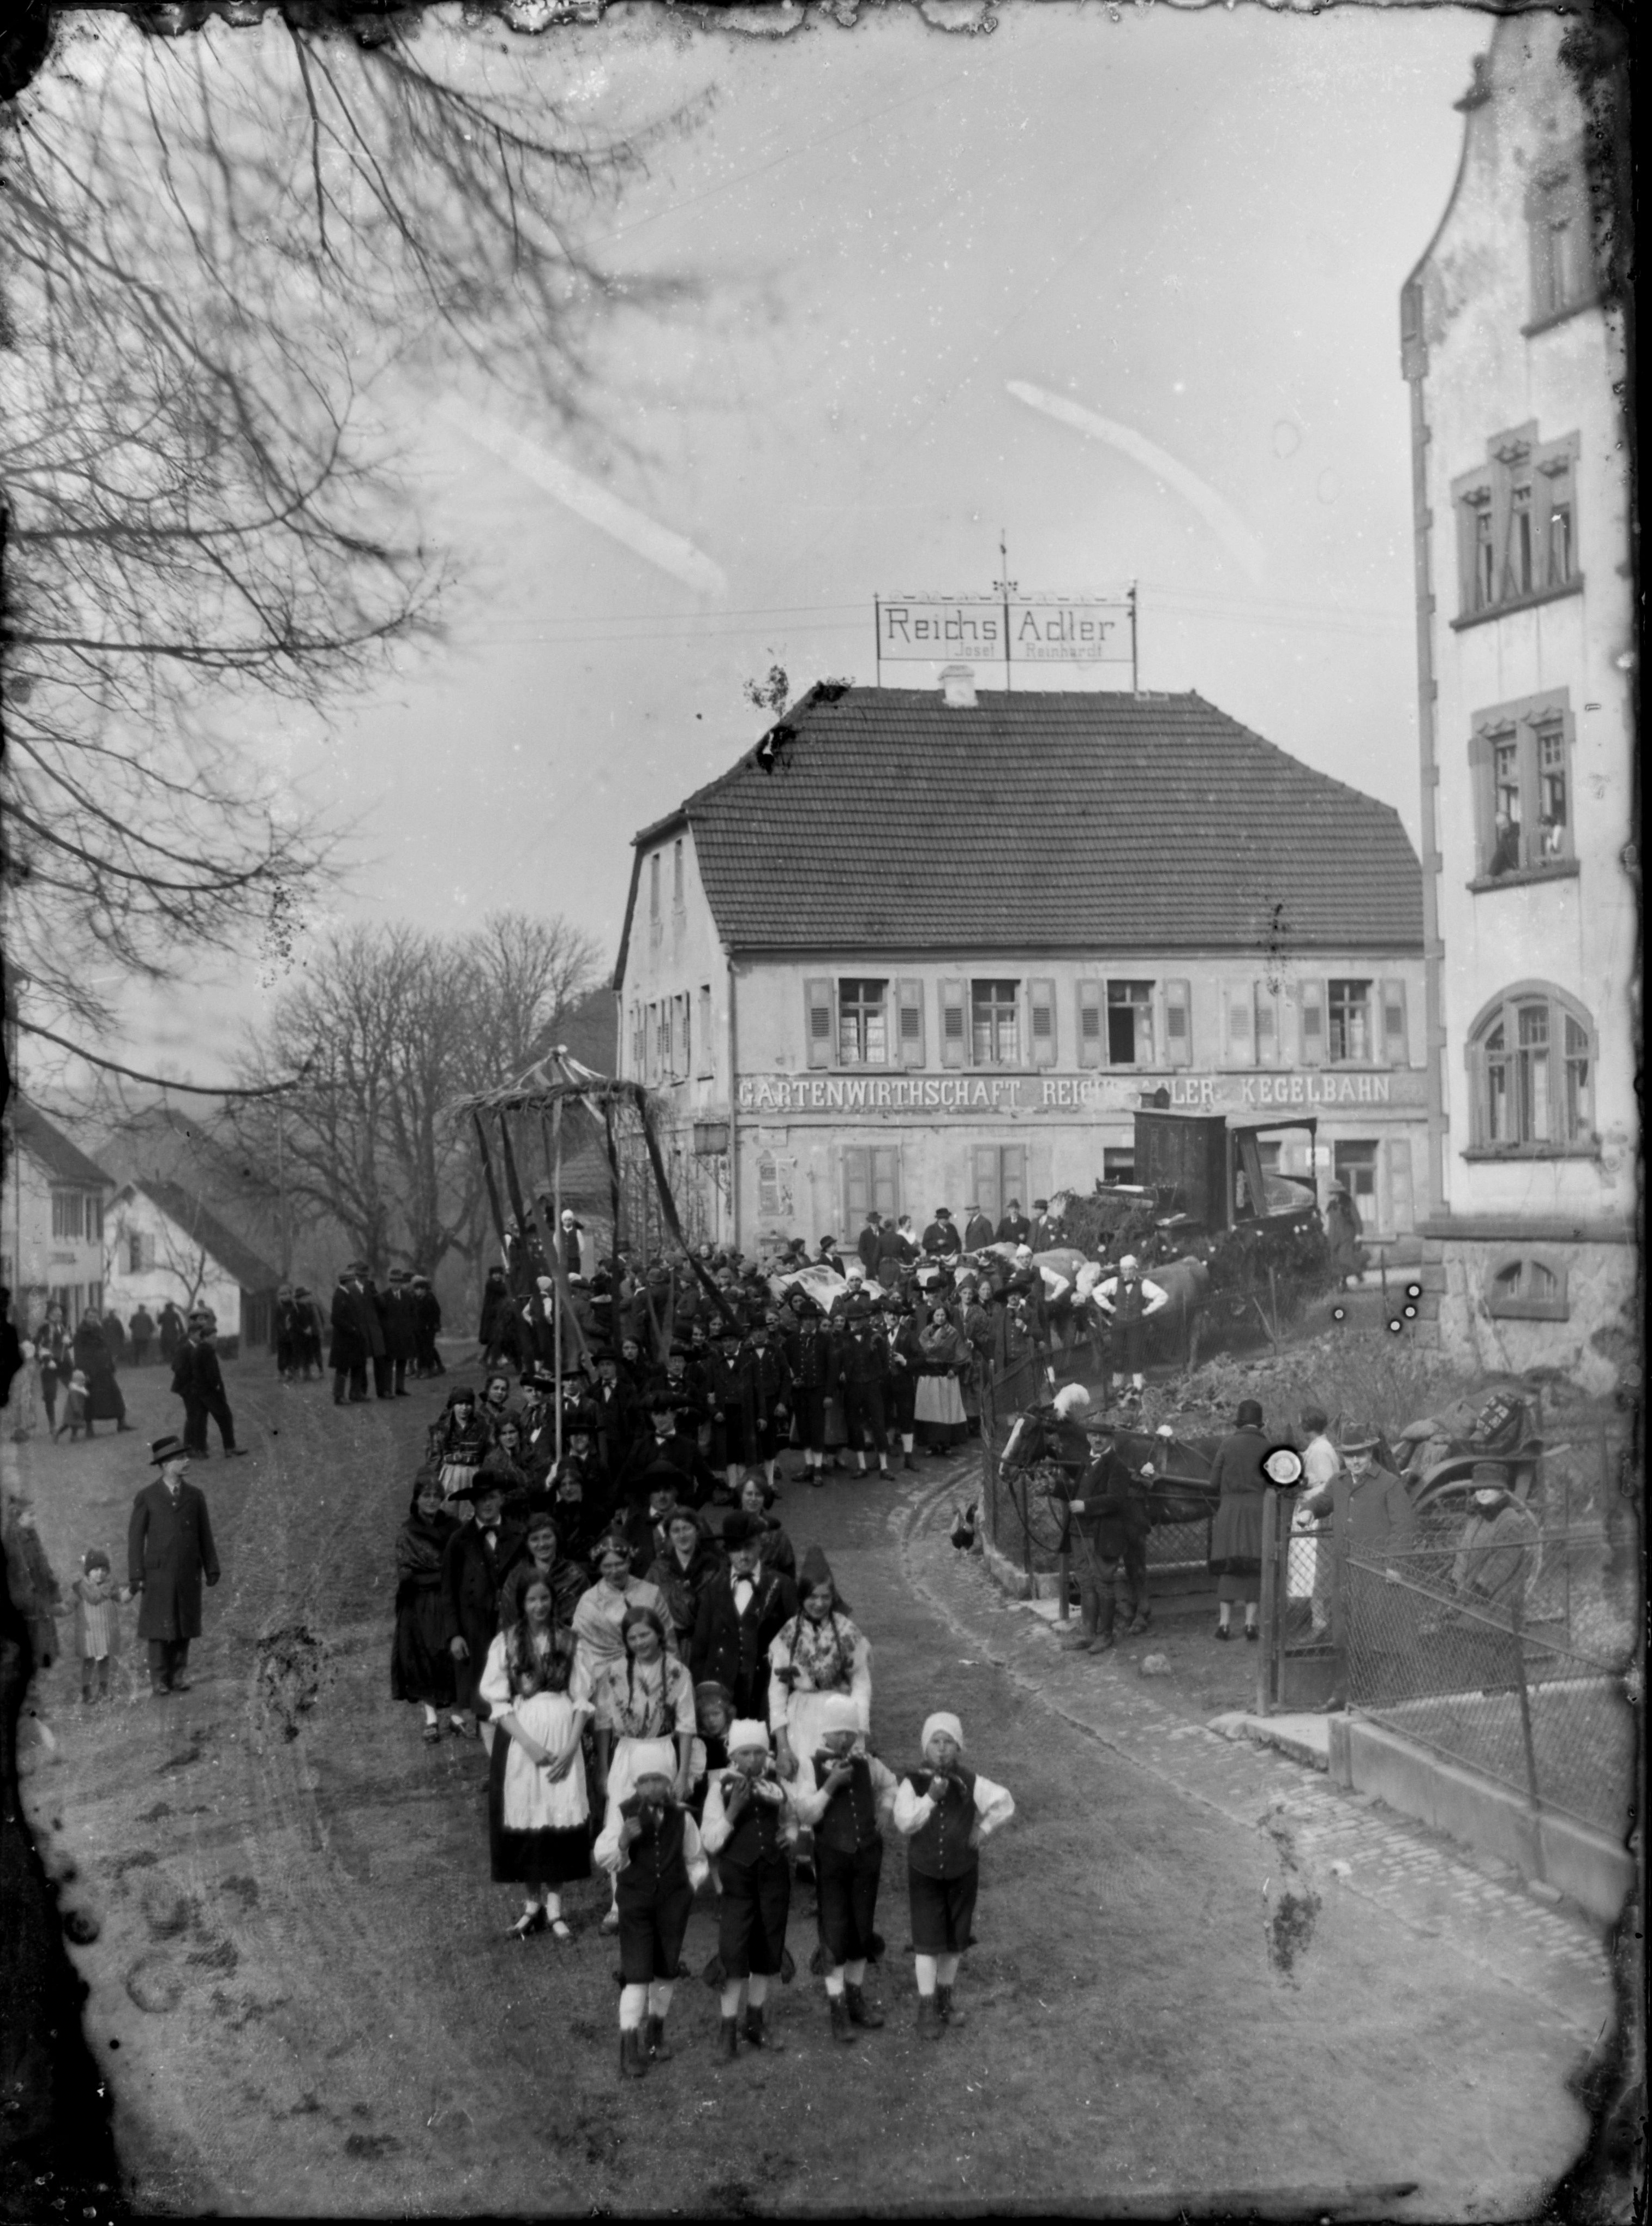 FG Narhalla Hochzeitszug, Reichsadler und Hochhäuser (Bezirksmuseum Buchen CC BY-NC-SA)